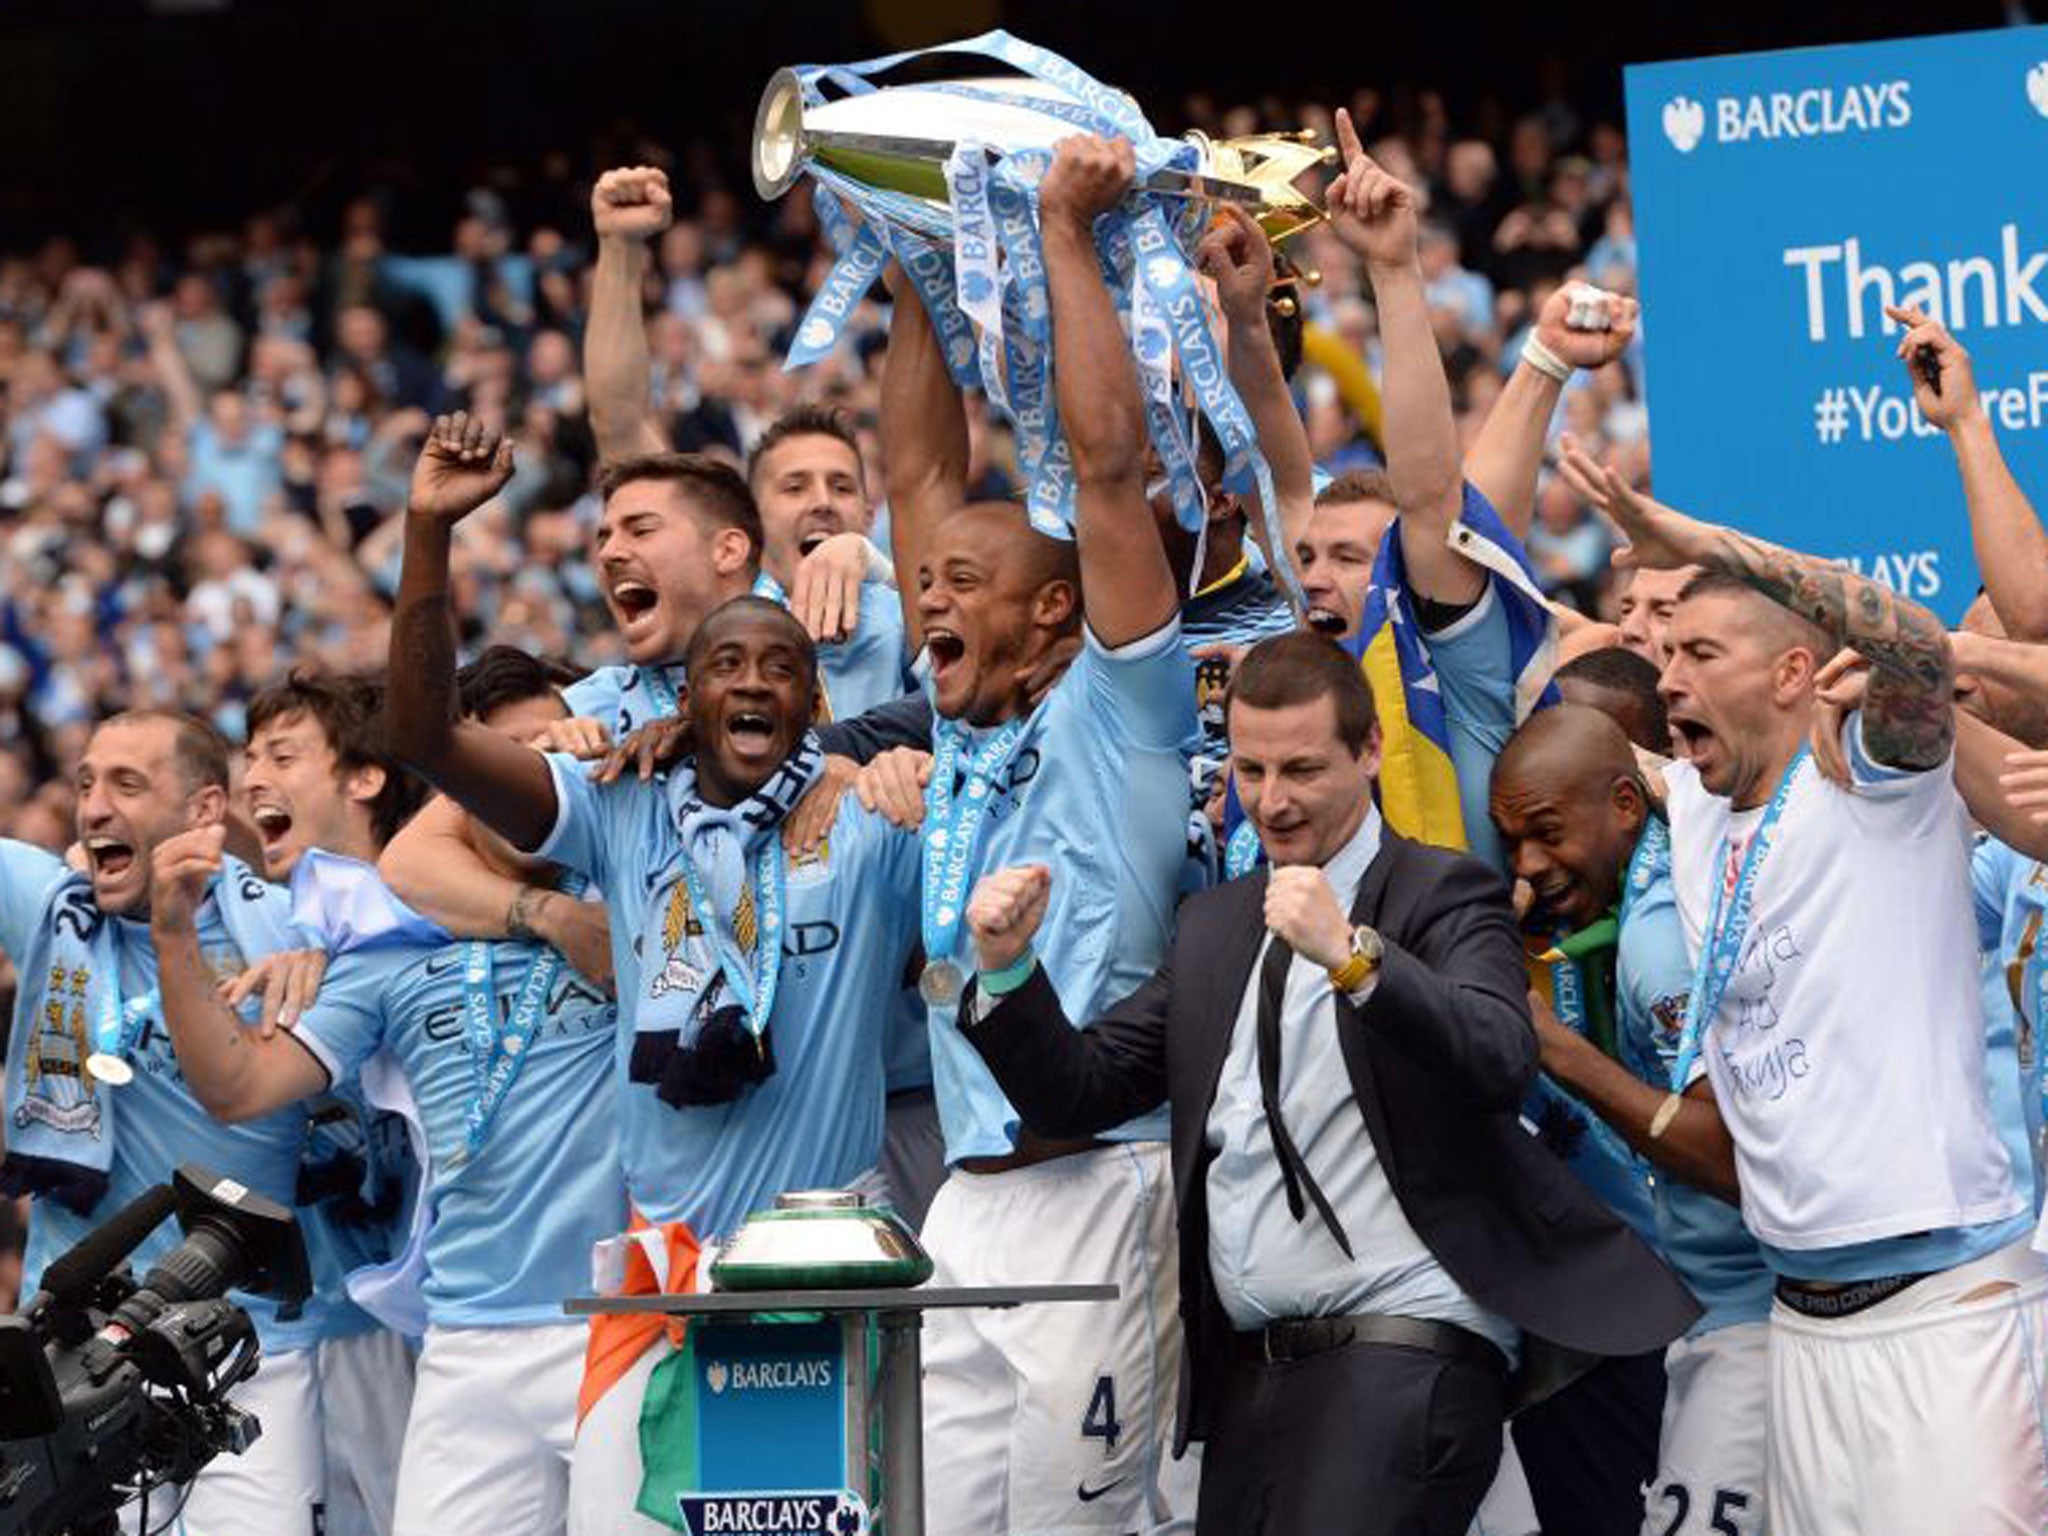 Vincent Kompany holds the Premier League title aloft after Manchester City's win over West Ham